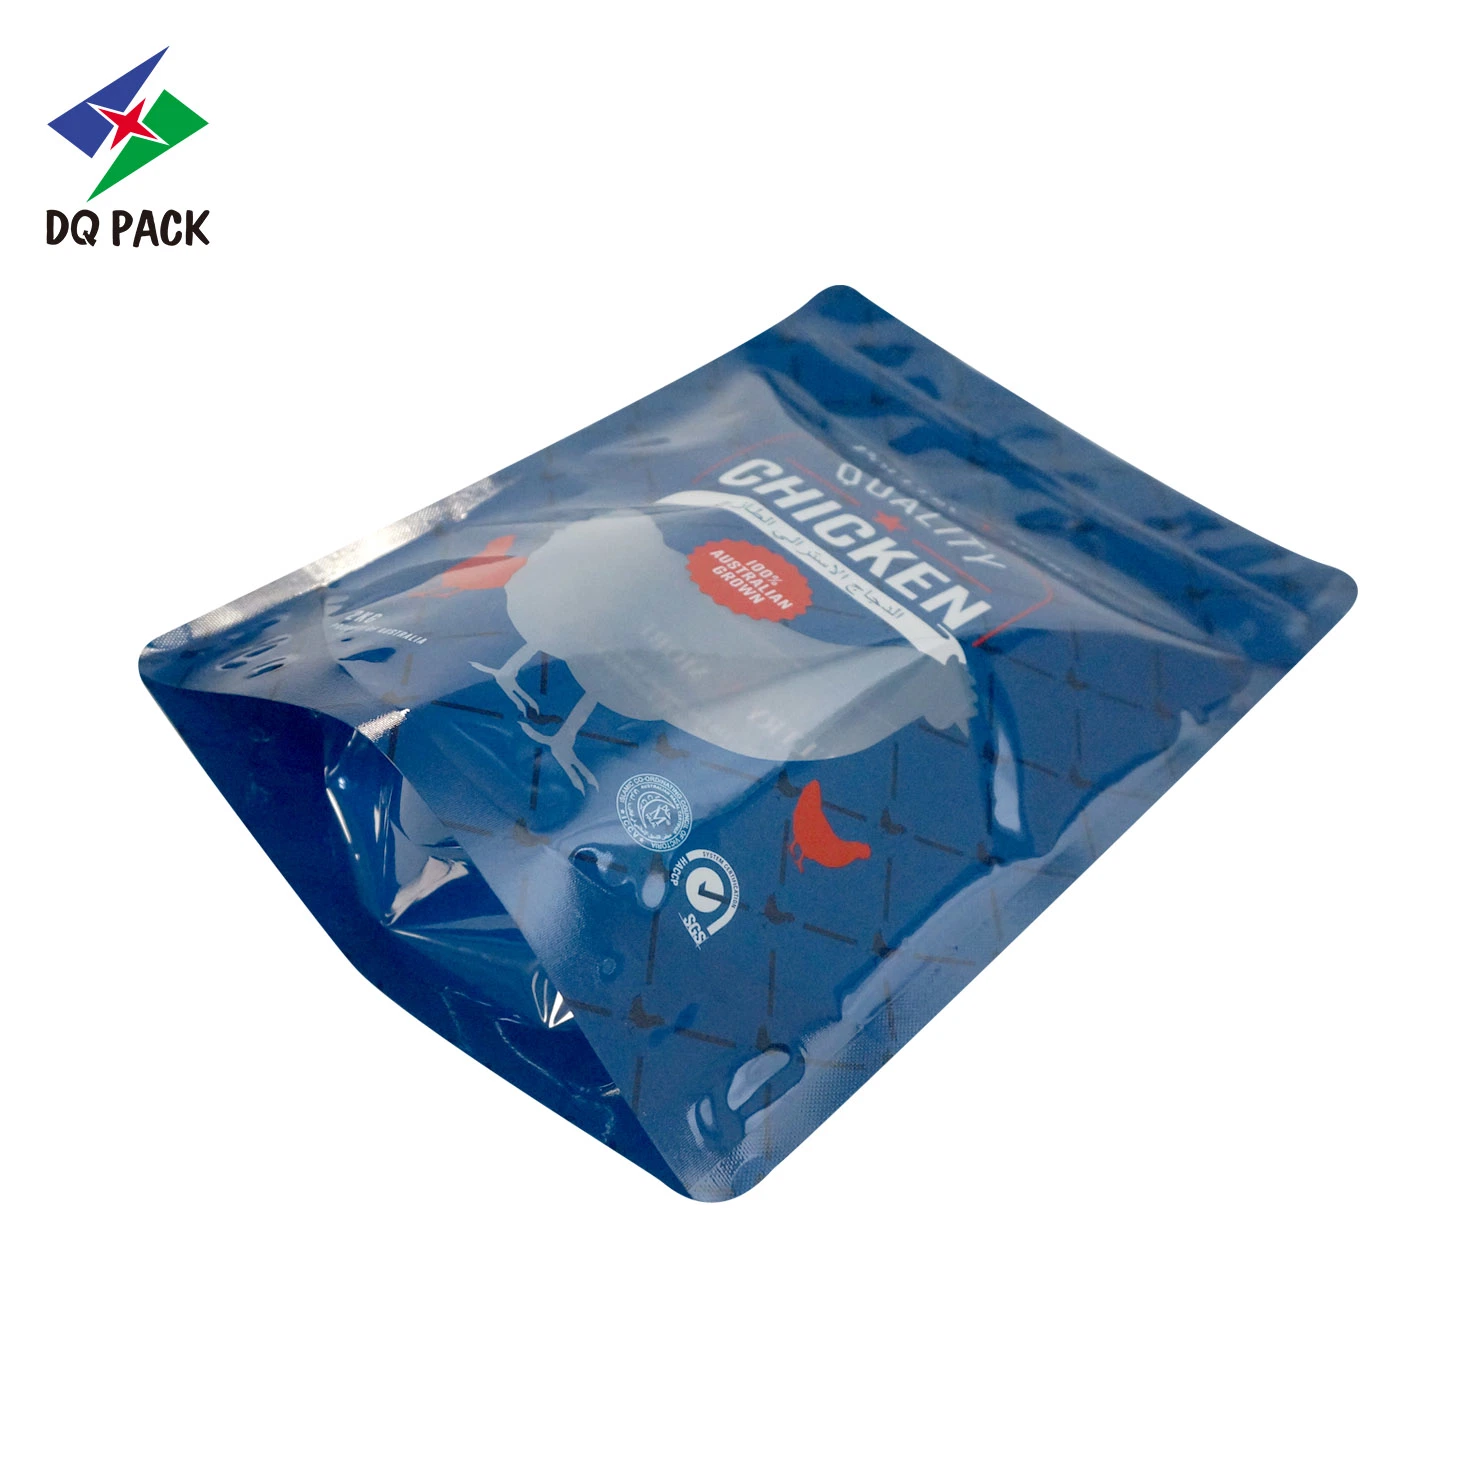 OEM Design Custom Printing Kunststoff Stand Up Ziplock Verpackung Tasche Beutel mit Reißverschluss Fenster für Fleisch Lebensmittel Verpackung